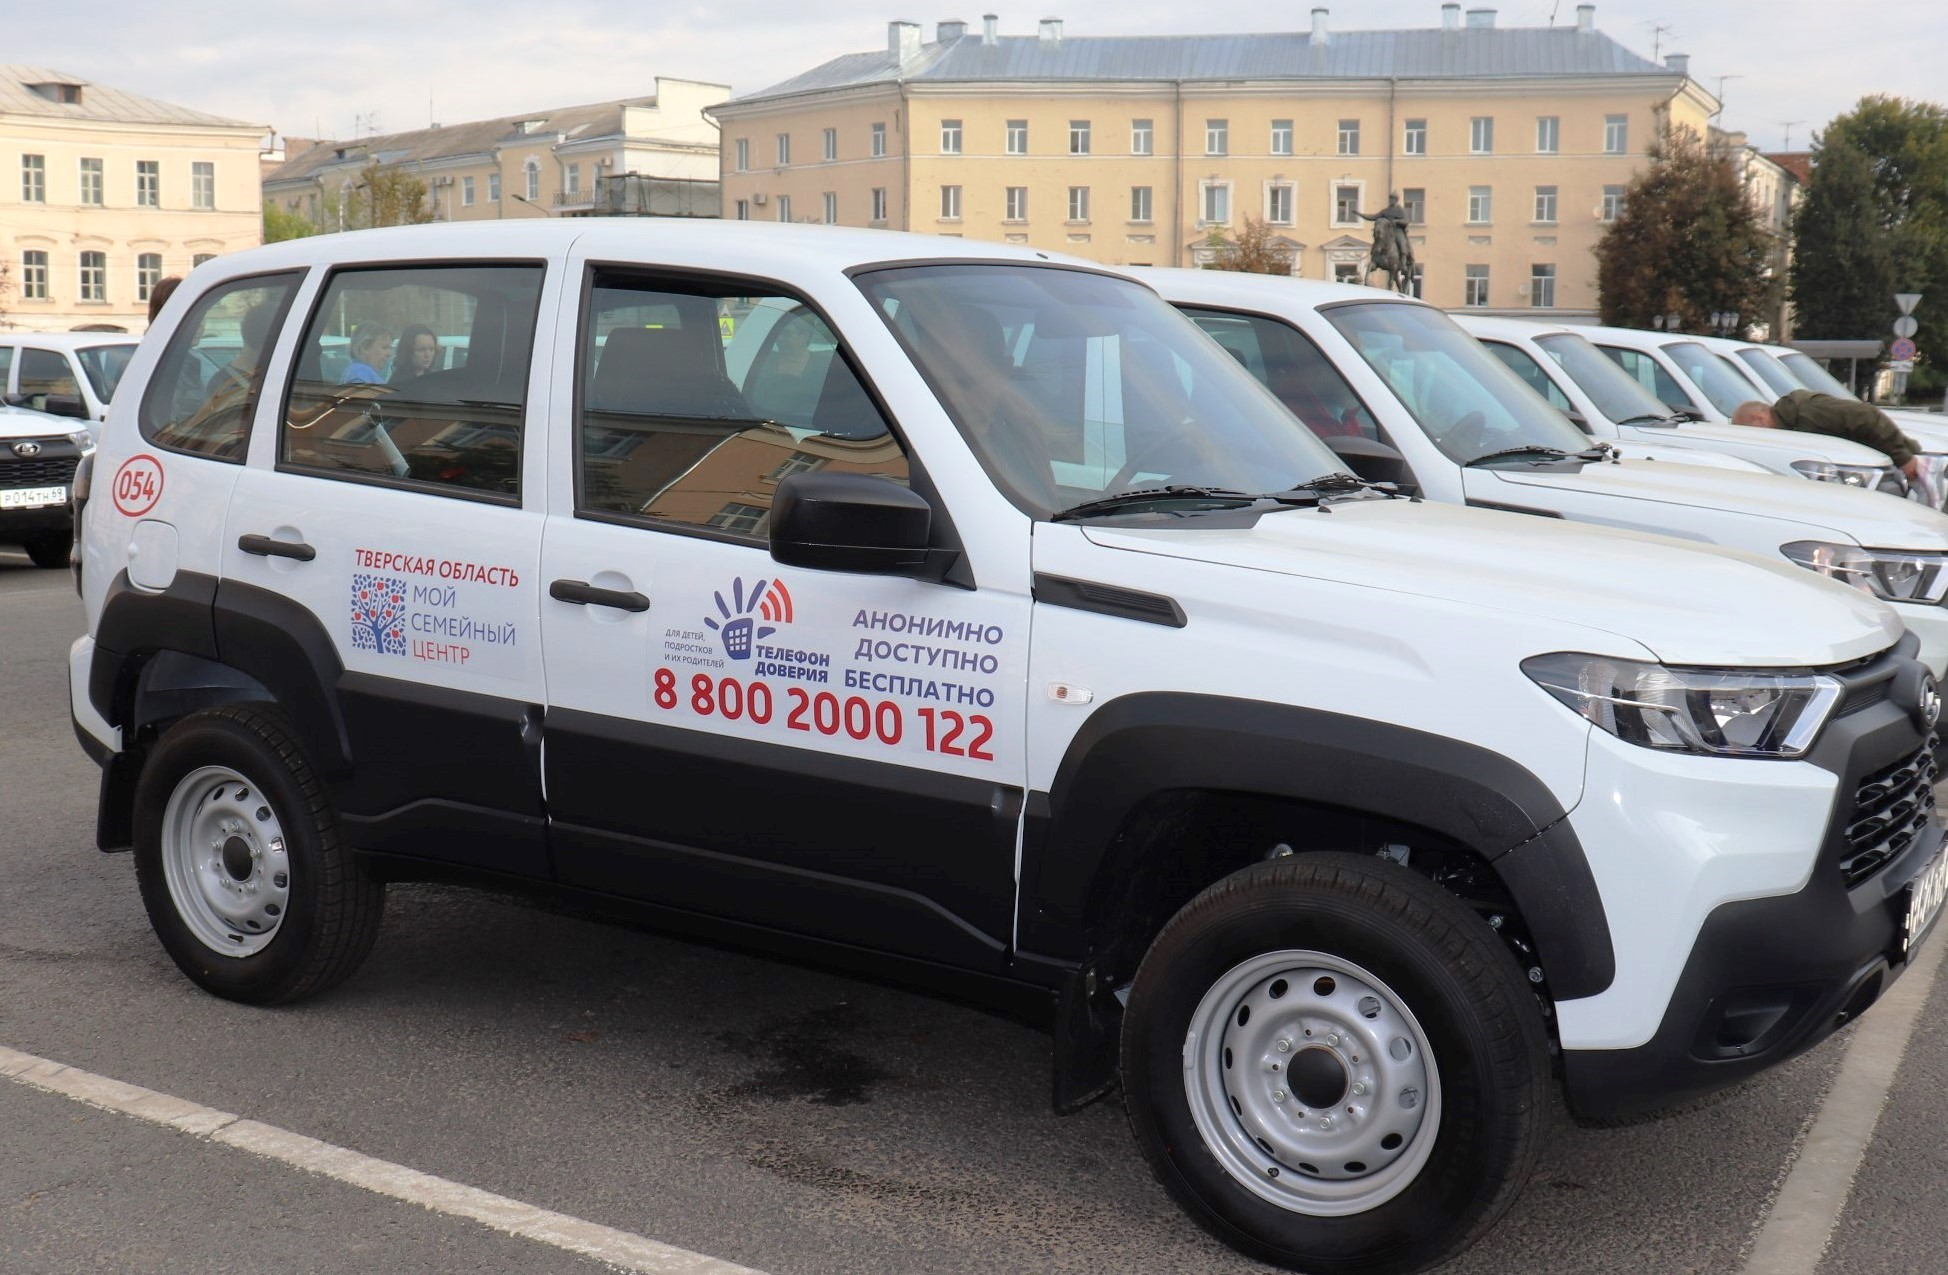 В Тверской области в рейды по оказанию социальной помощи семьям с детьми вышли новые автомобили с логотипом Детского телефона доверия